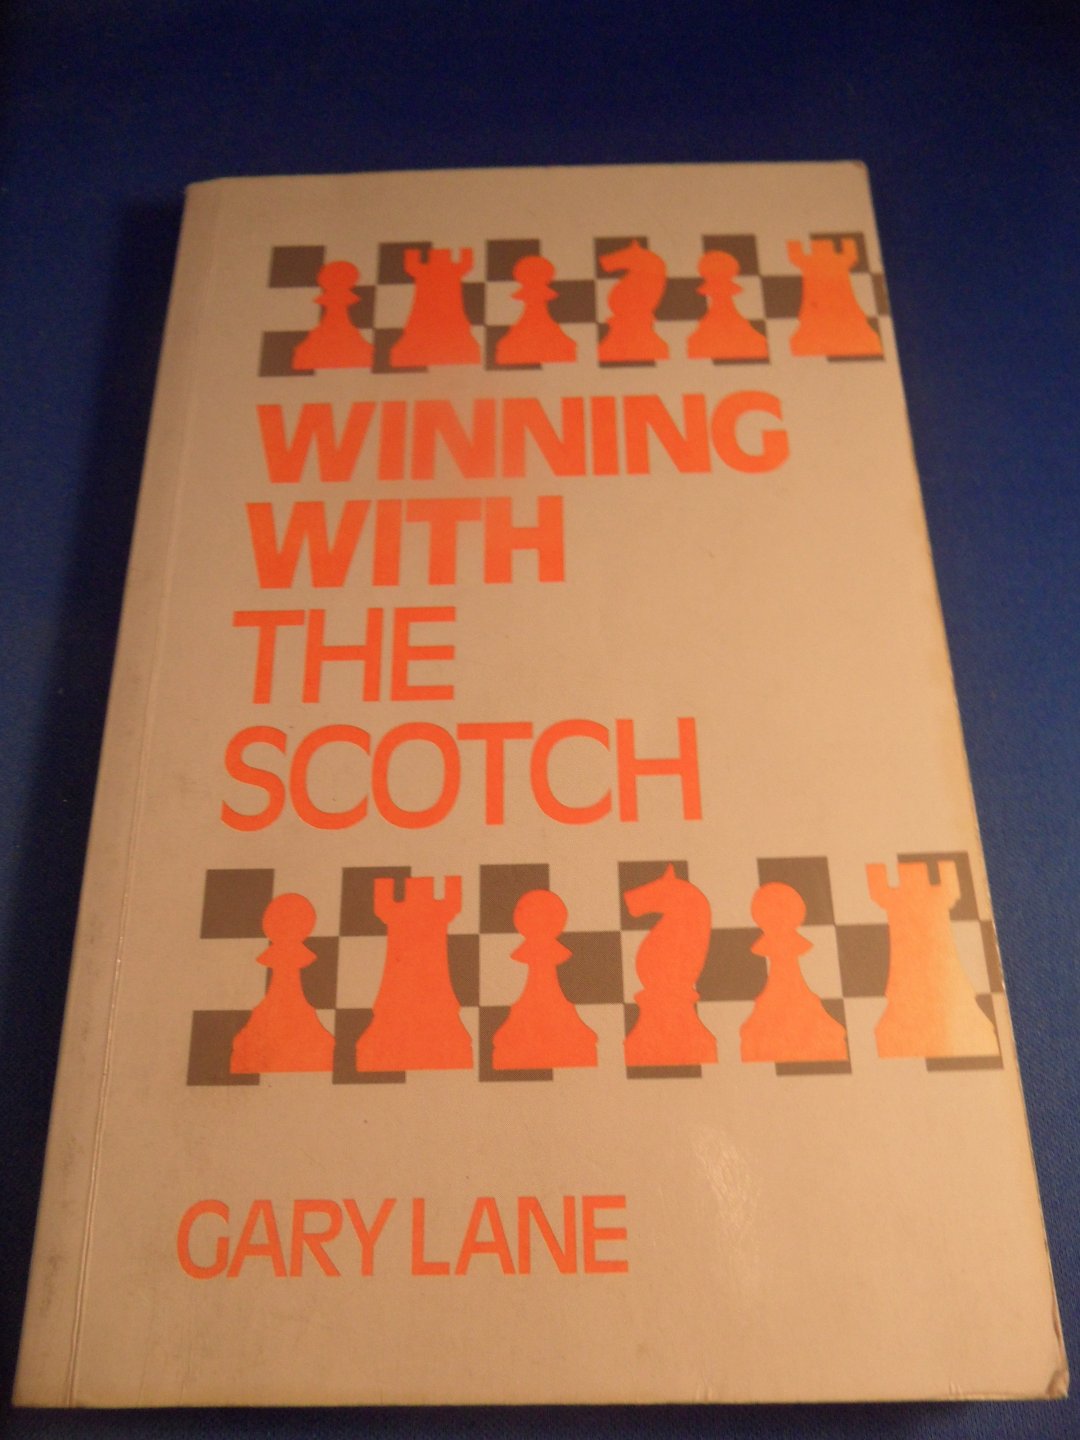 Lane, Gary - Winning with the Scotch